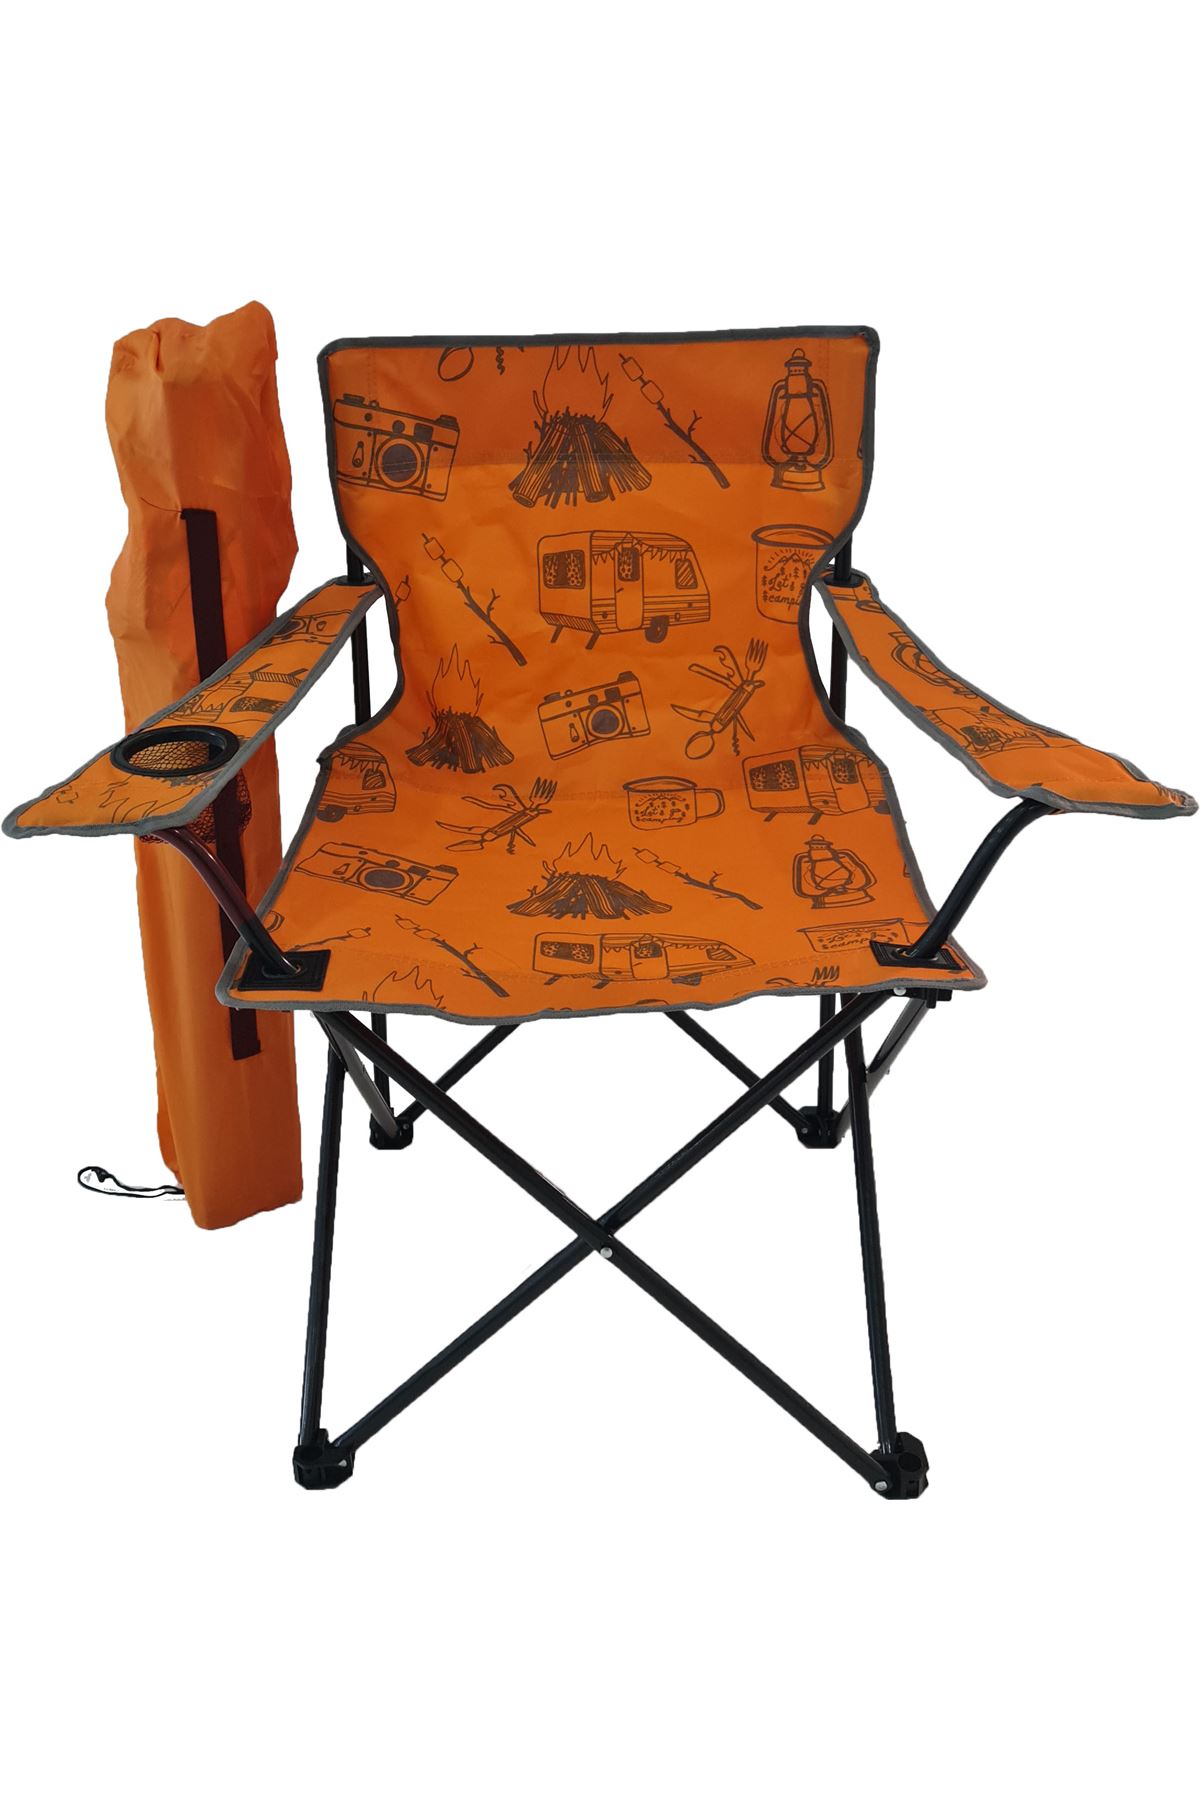 Bofigo Kamp Sandalyesi Katlanır Sandalye Bahçe Koltuğu Piknik Plaj Balkon Sandalyesi Desenli Turuncu